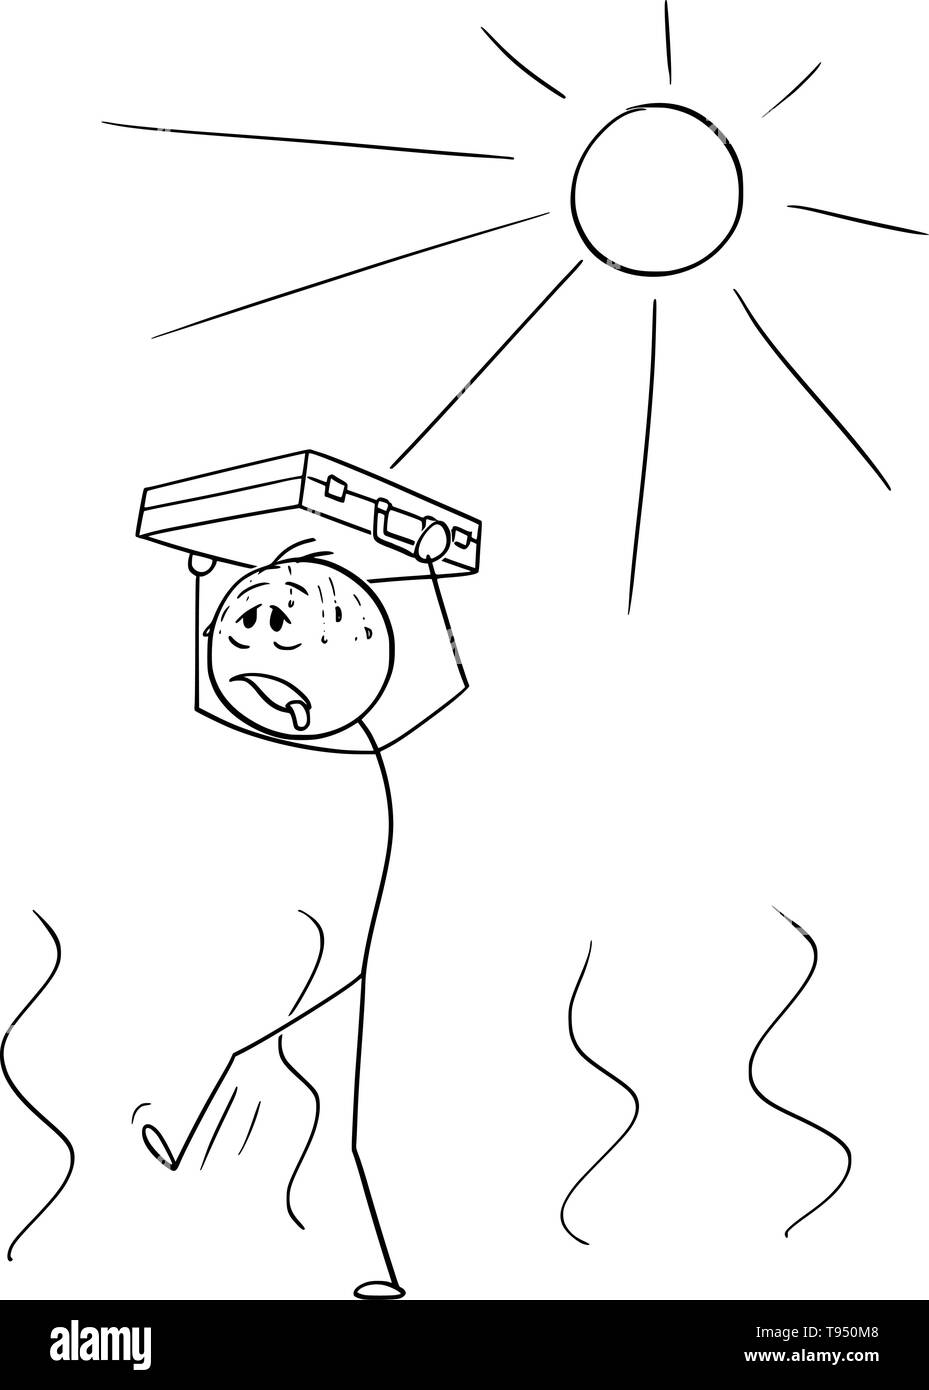 Vektor cartoon Strichmännchen Zeichnen konzeptionelle Darstellung der Durstige Mann oder Geschäftsmann wandern in heißem Wetter mit Aktenkoffer über seinem Kopf ihm Schutz vor der Sonne Metapher der Finanzkrise. Stock Vektor